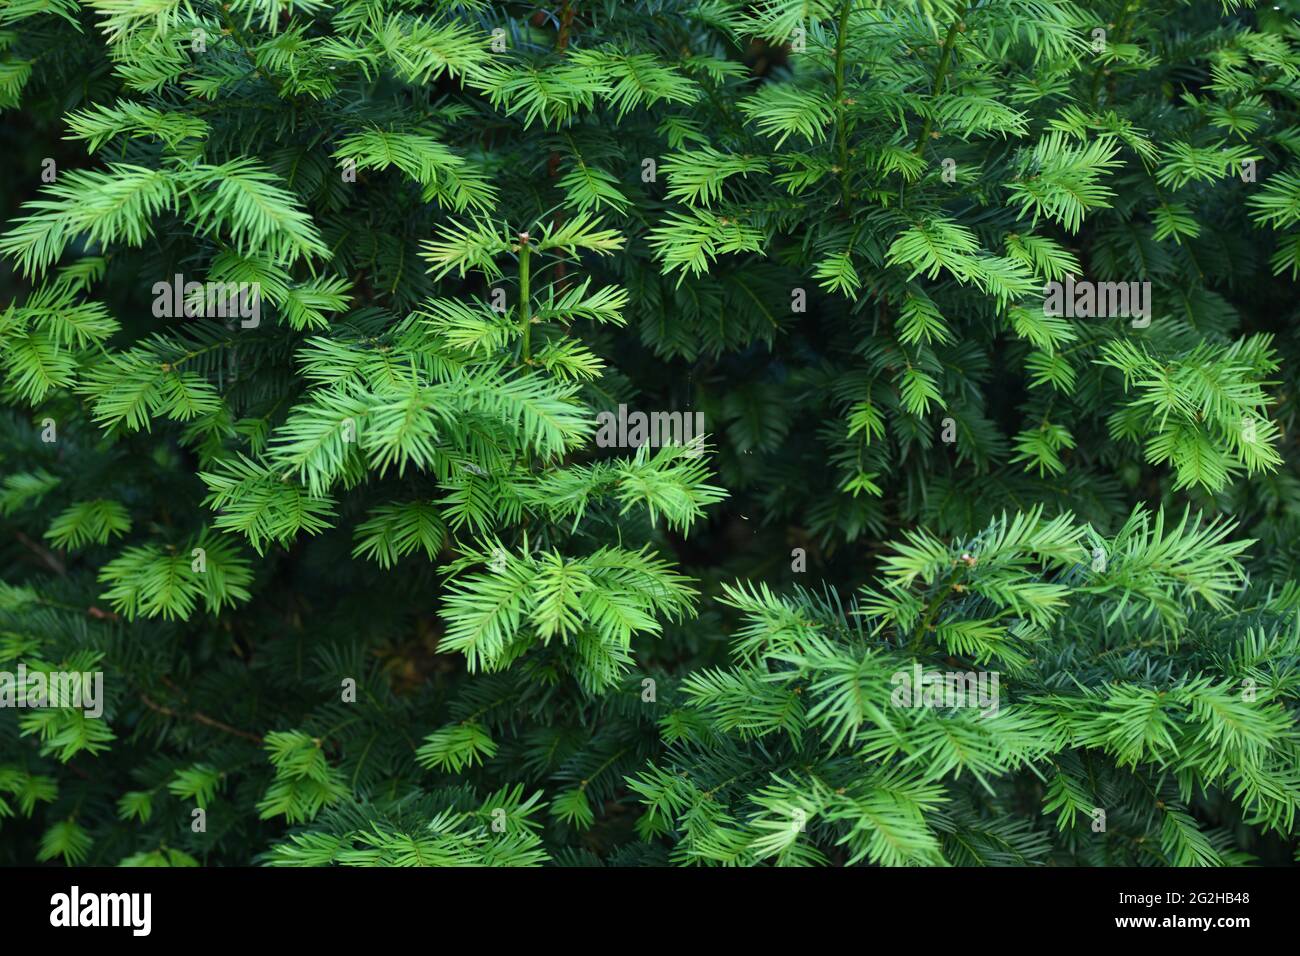 frisch ausgetriebene Eibensprösslinge mit ihrem hellen grün gegen die älteren Zweige einer Taxiu baccata Stock Photo